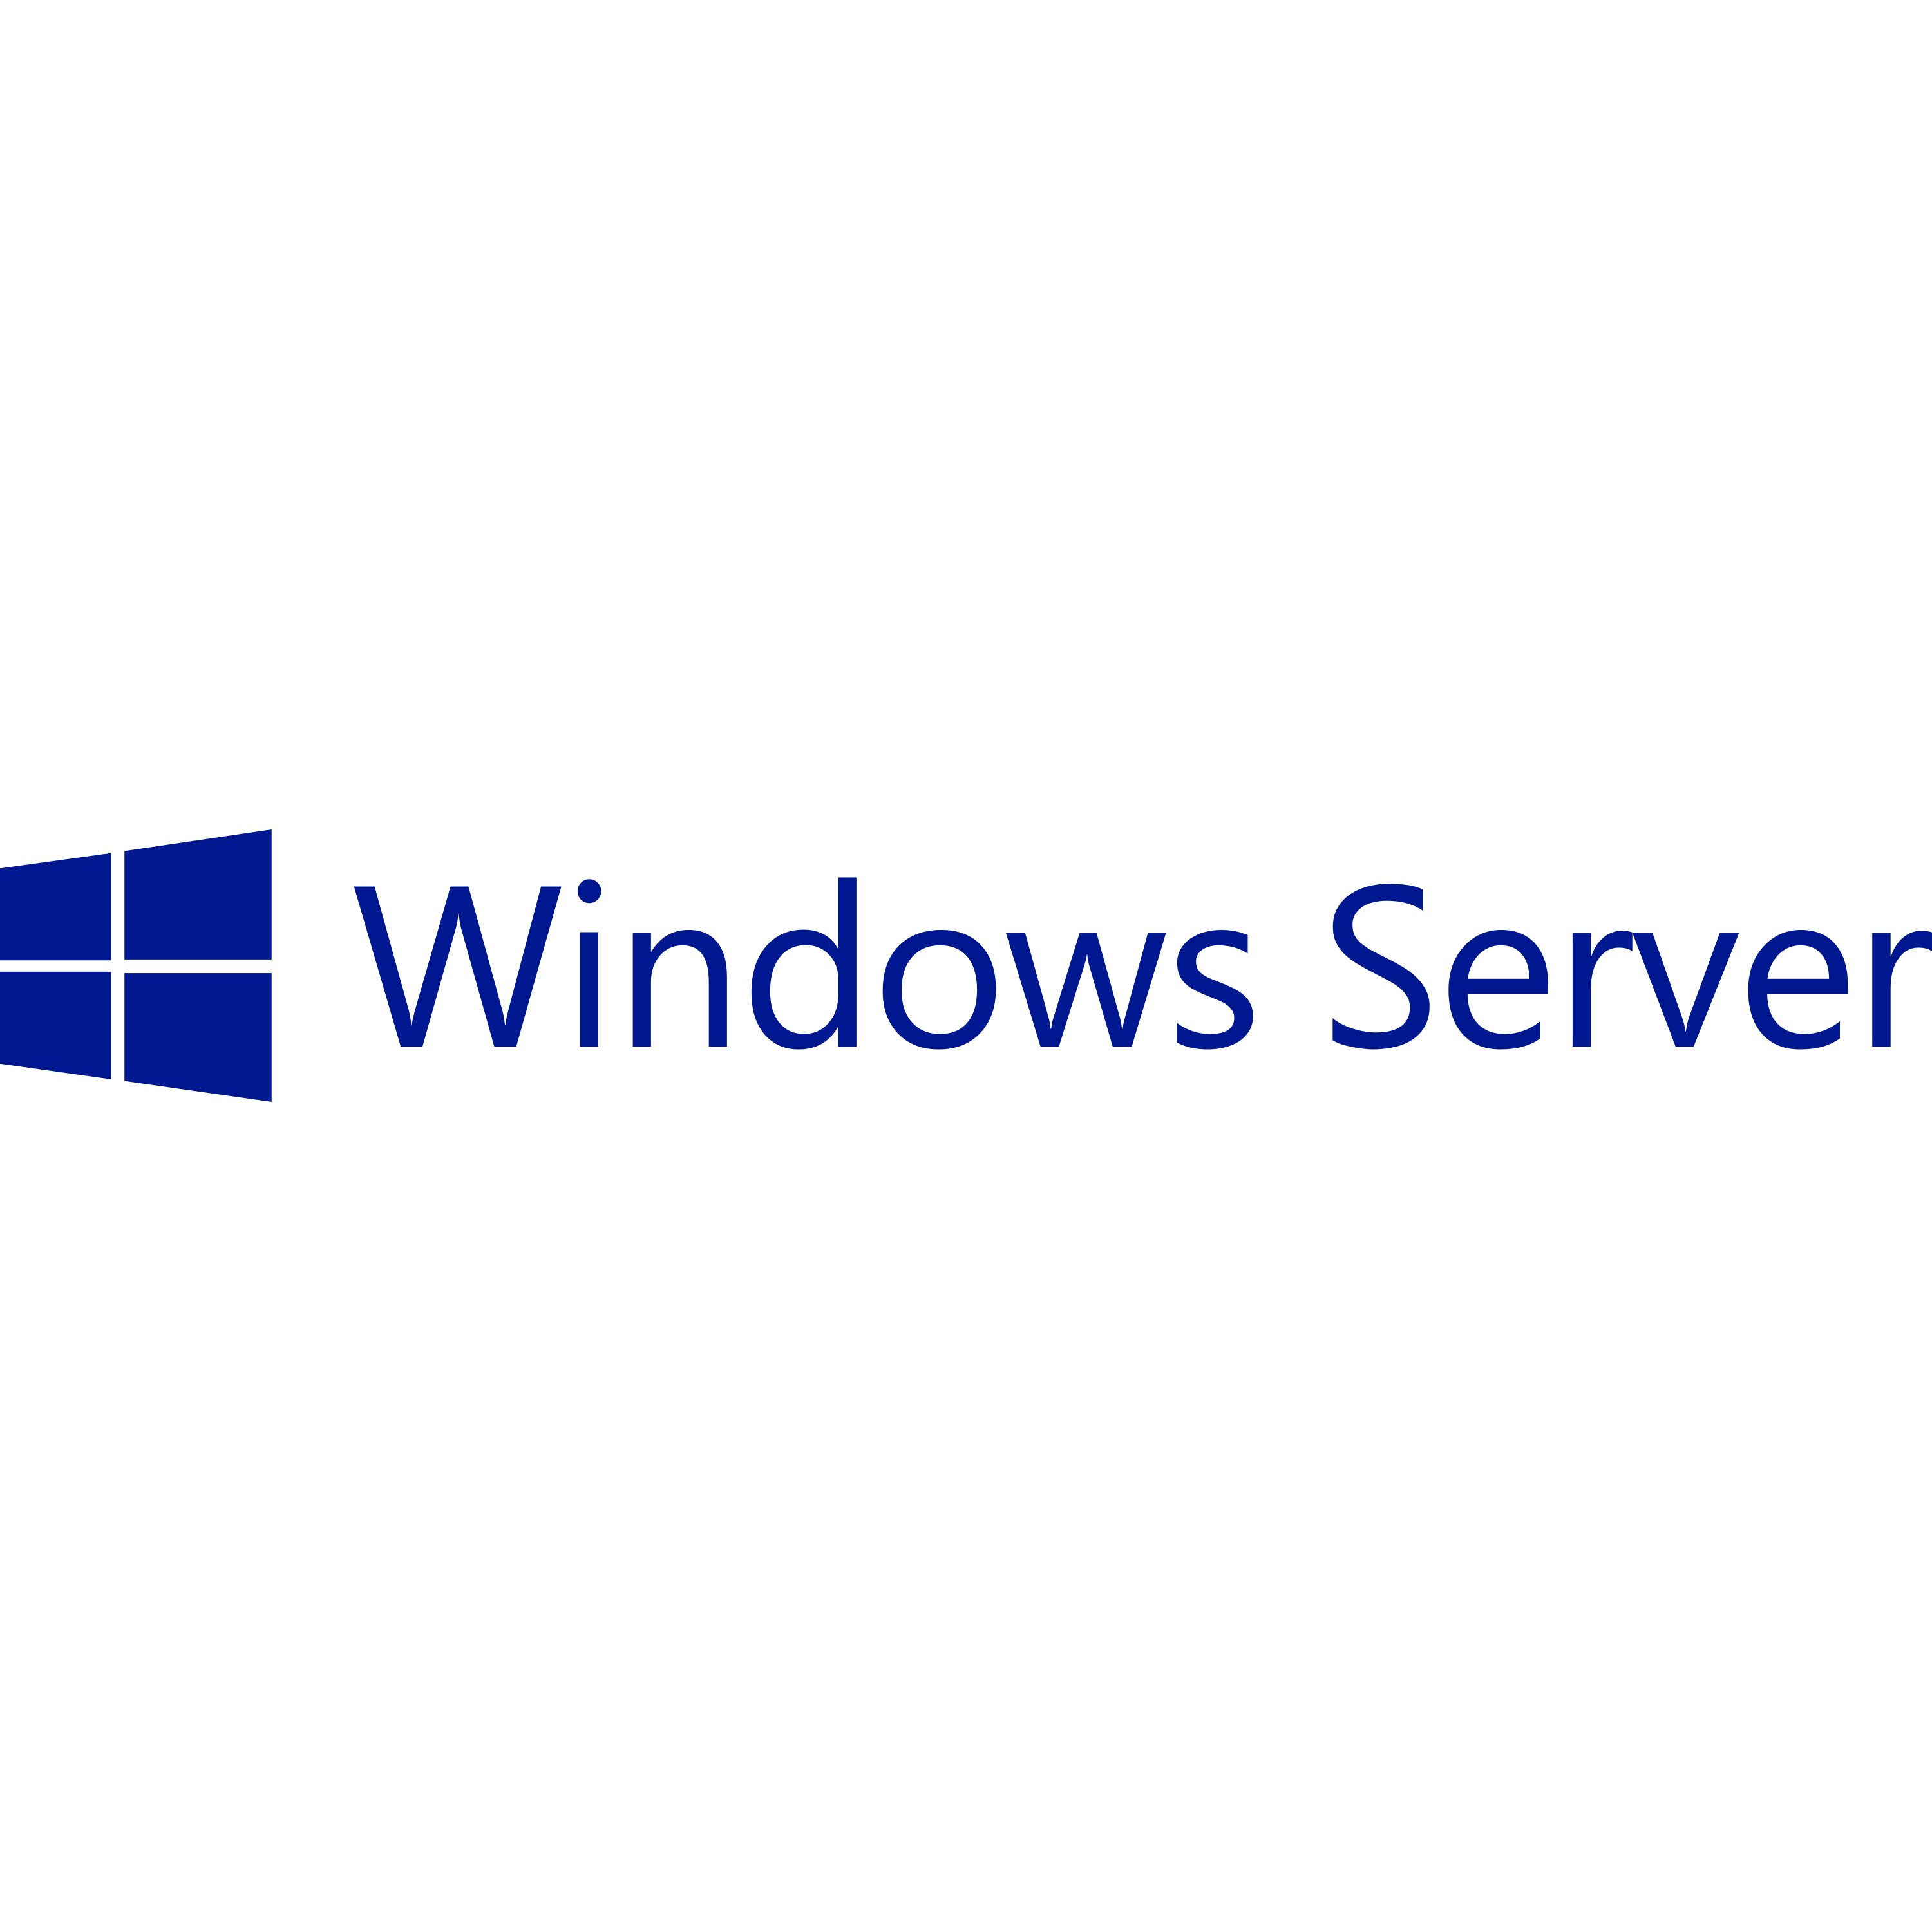 Windows Server Logo Transparent Image